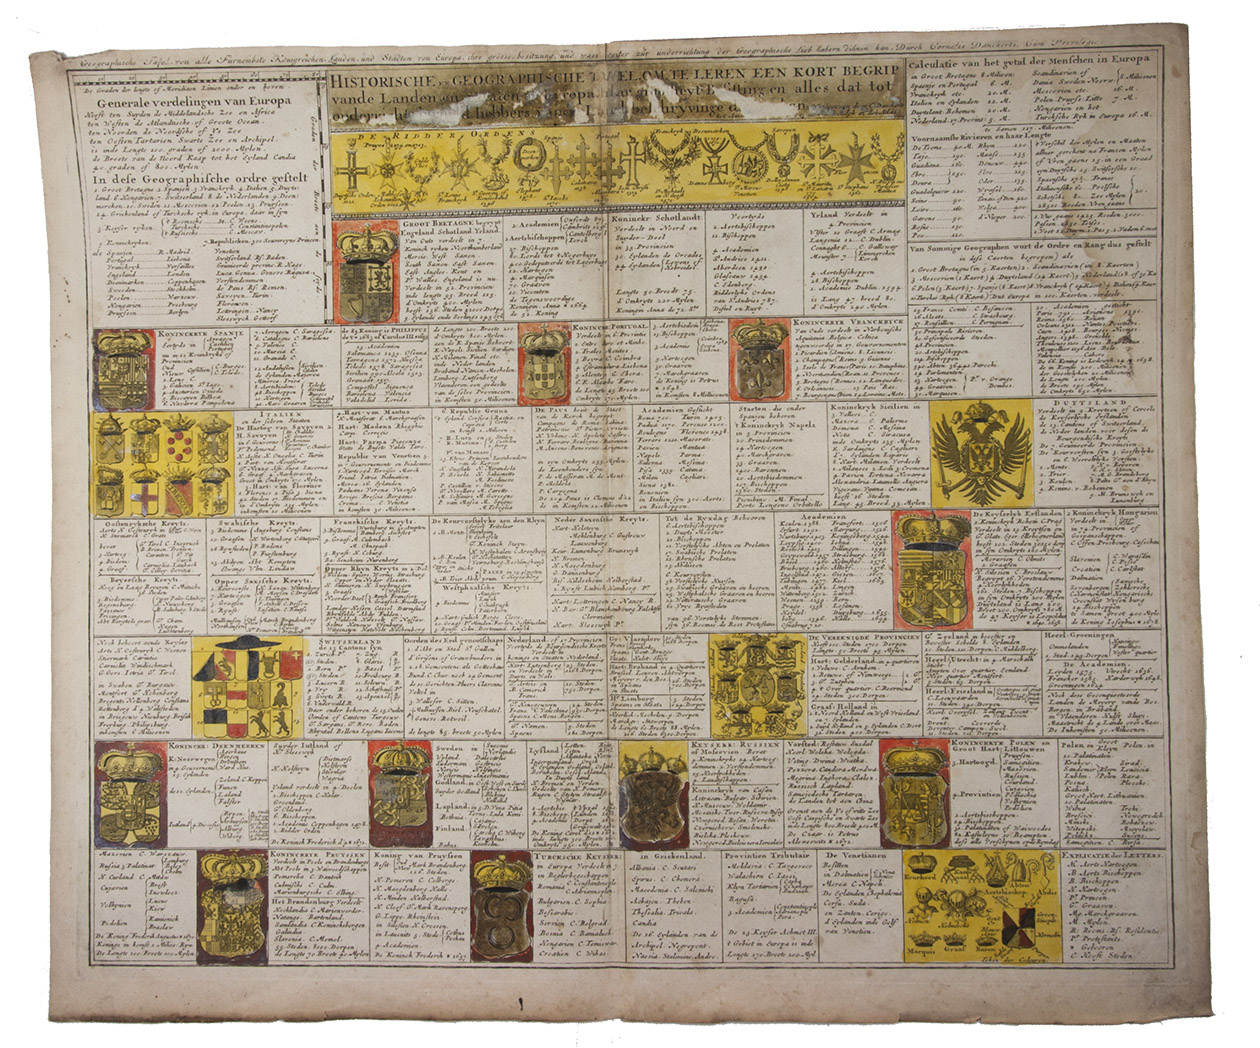 [HERALDIC CHART - EUROPE]. [SPECHT, Caspar]. - Historische en geographische tafel om te leren een kort begrip vande landen en staaten in Europa haar grootheyt, besitting en alles dat tot onderricht der liefhebbers van de landbeschryvinge dienen kan.Amsterdam, Cornelis Danckerts II, [ca. 1703-1705]. Engraved chart (47.5 x 57 cm) printed on a single sheet of paper (51.5 x 61 cm), partly hand-coloured, including several coats of arms, with an added title in German engraved just above the image.